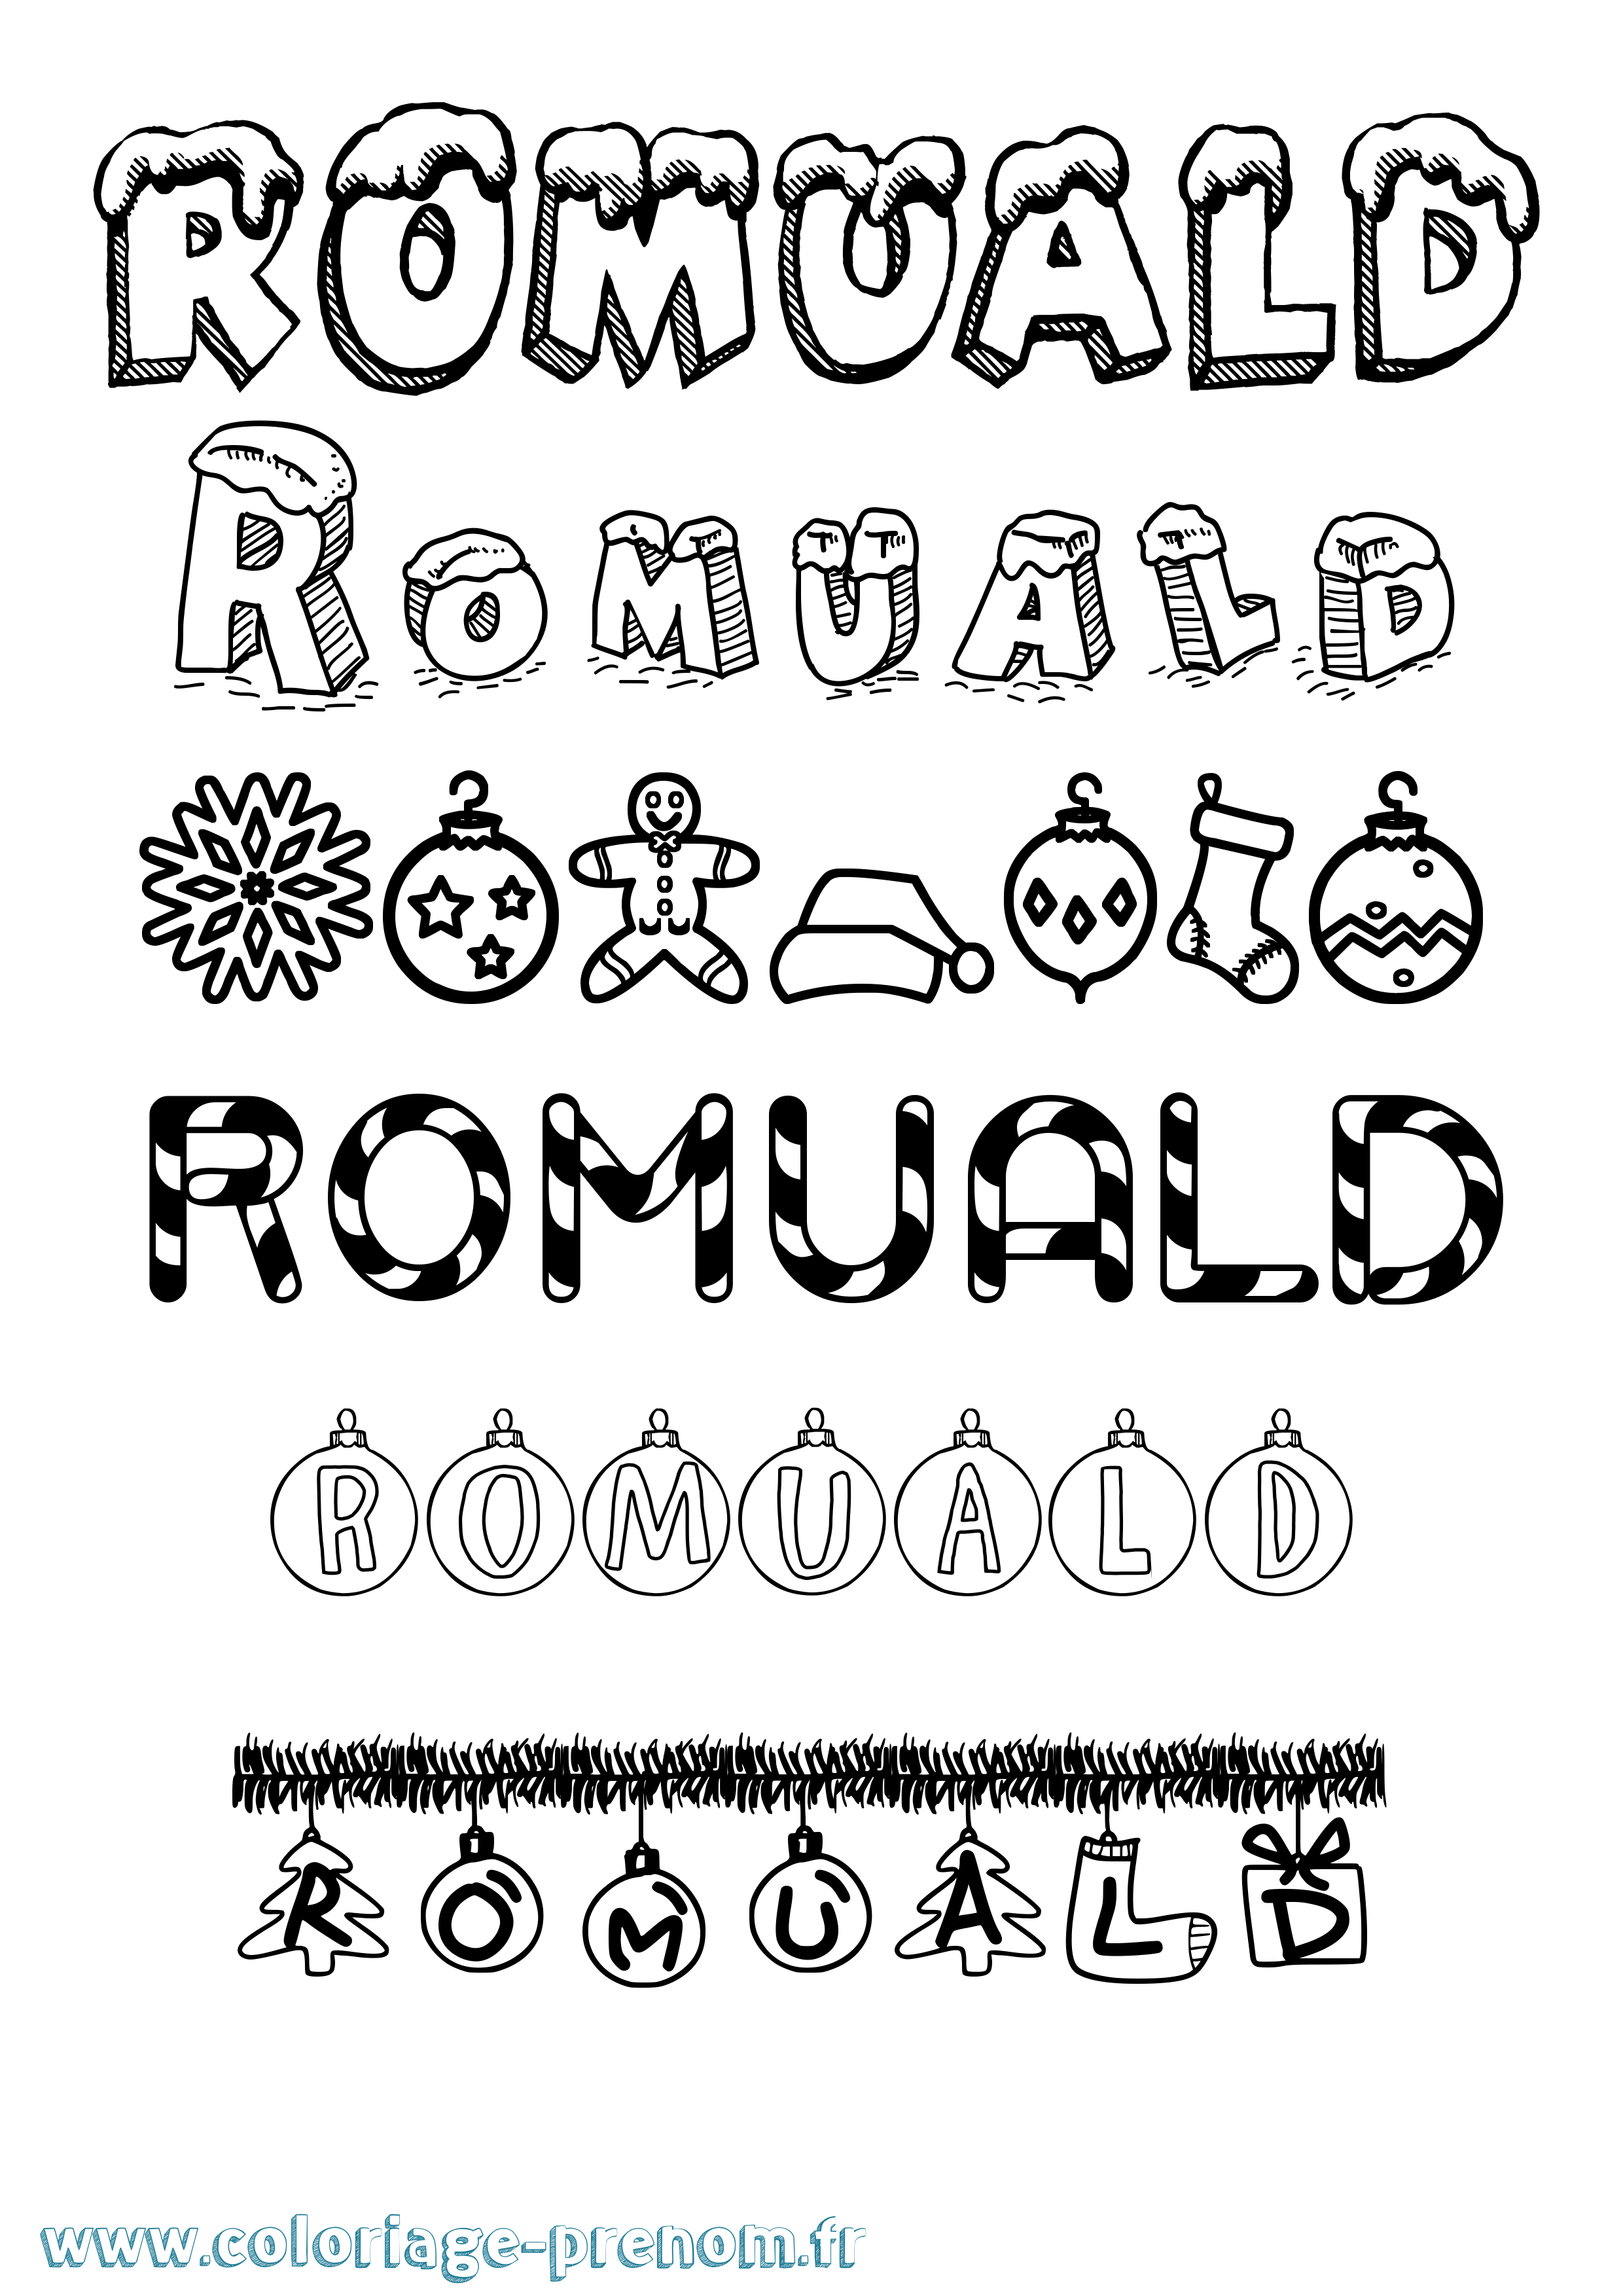 Coloriage prénom Romuald Noël